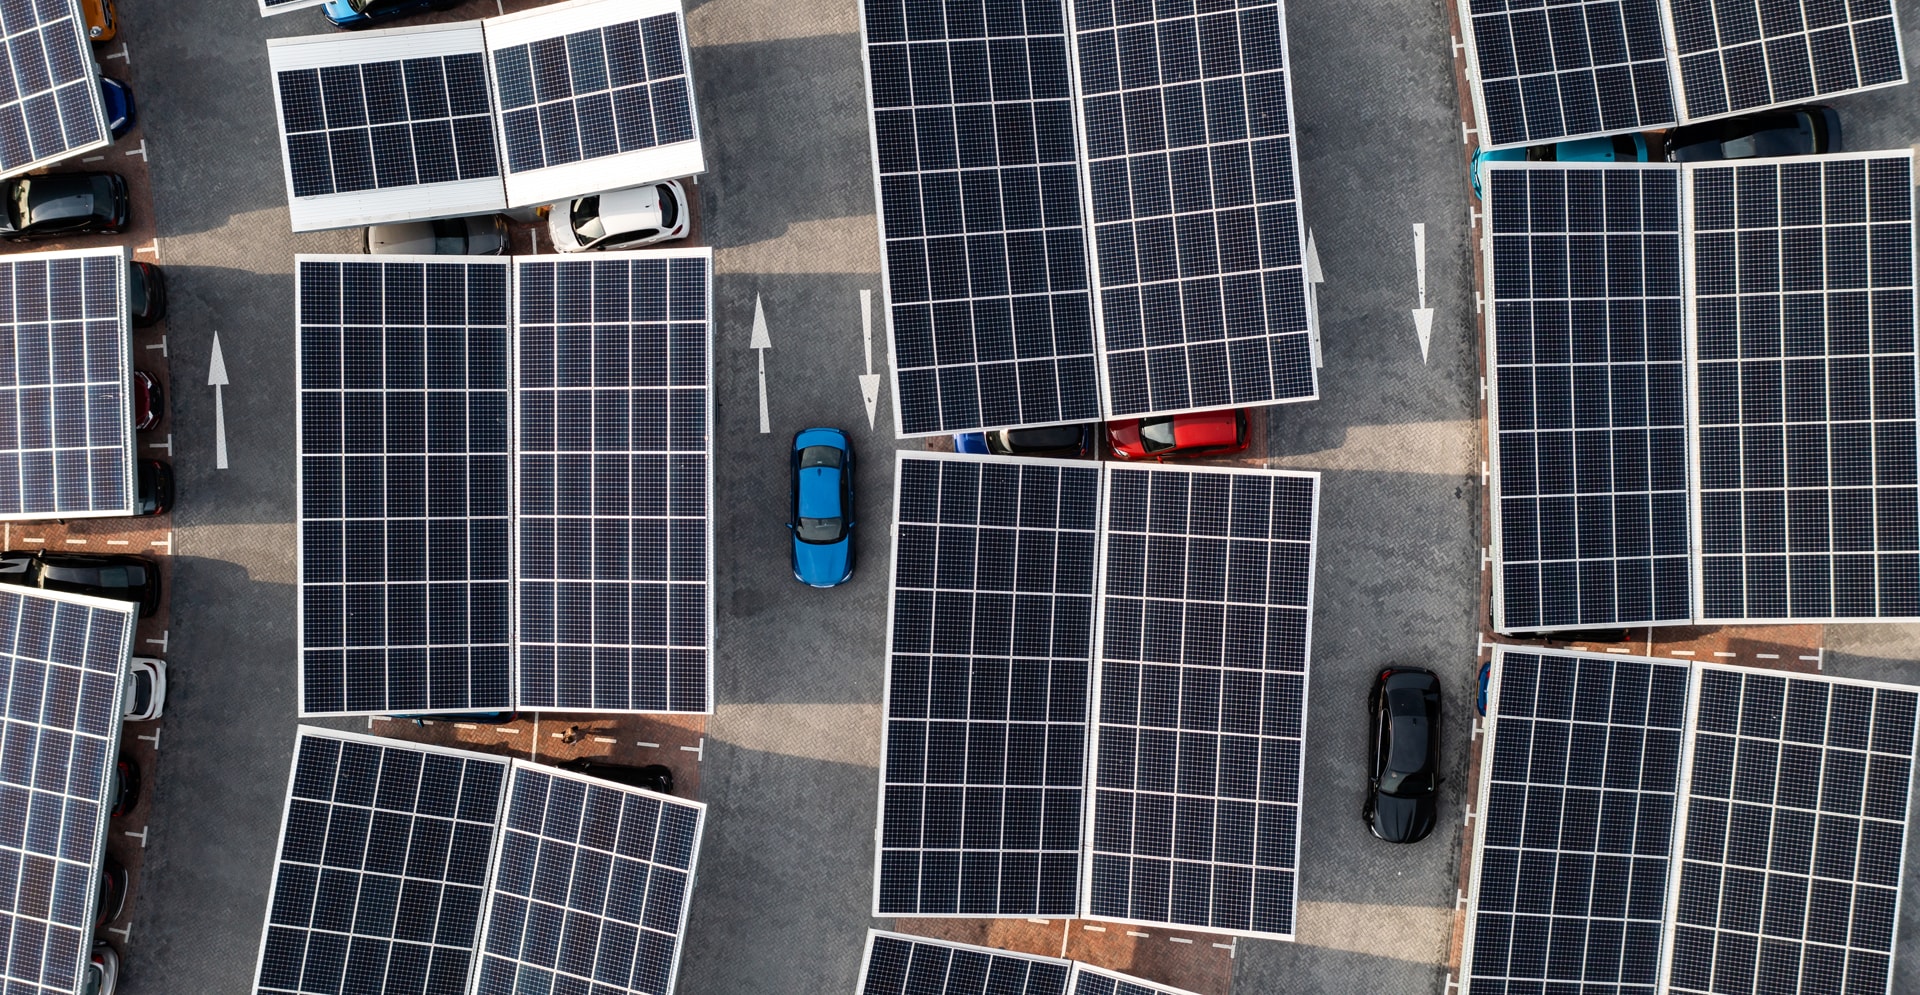 Station de recharge pour véhicules à partir de panneaux solaires pour les infrastructures de transport et de stockage d'énergie